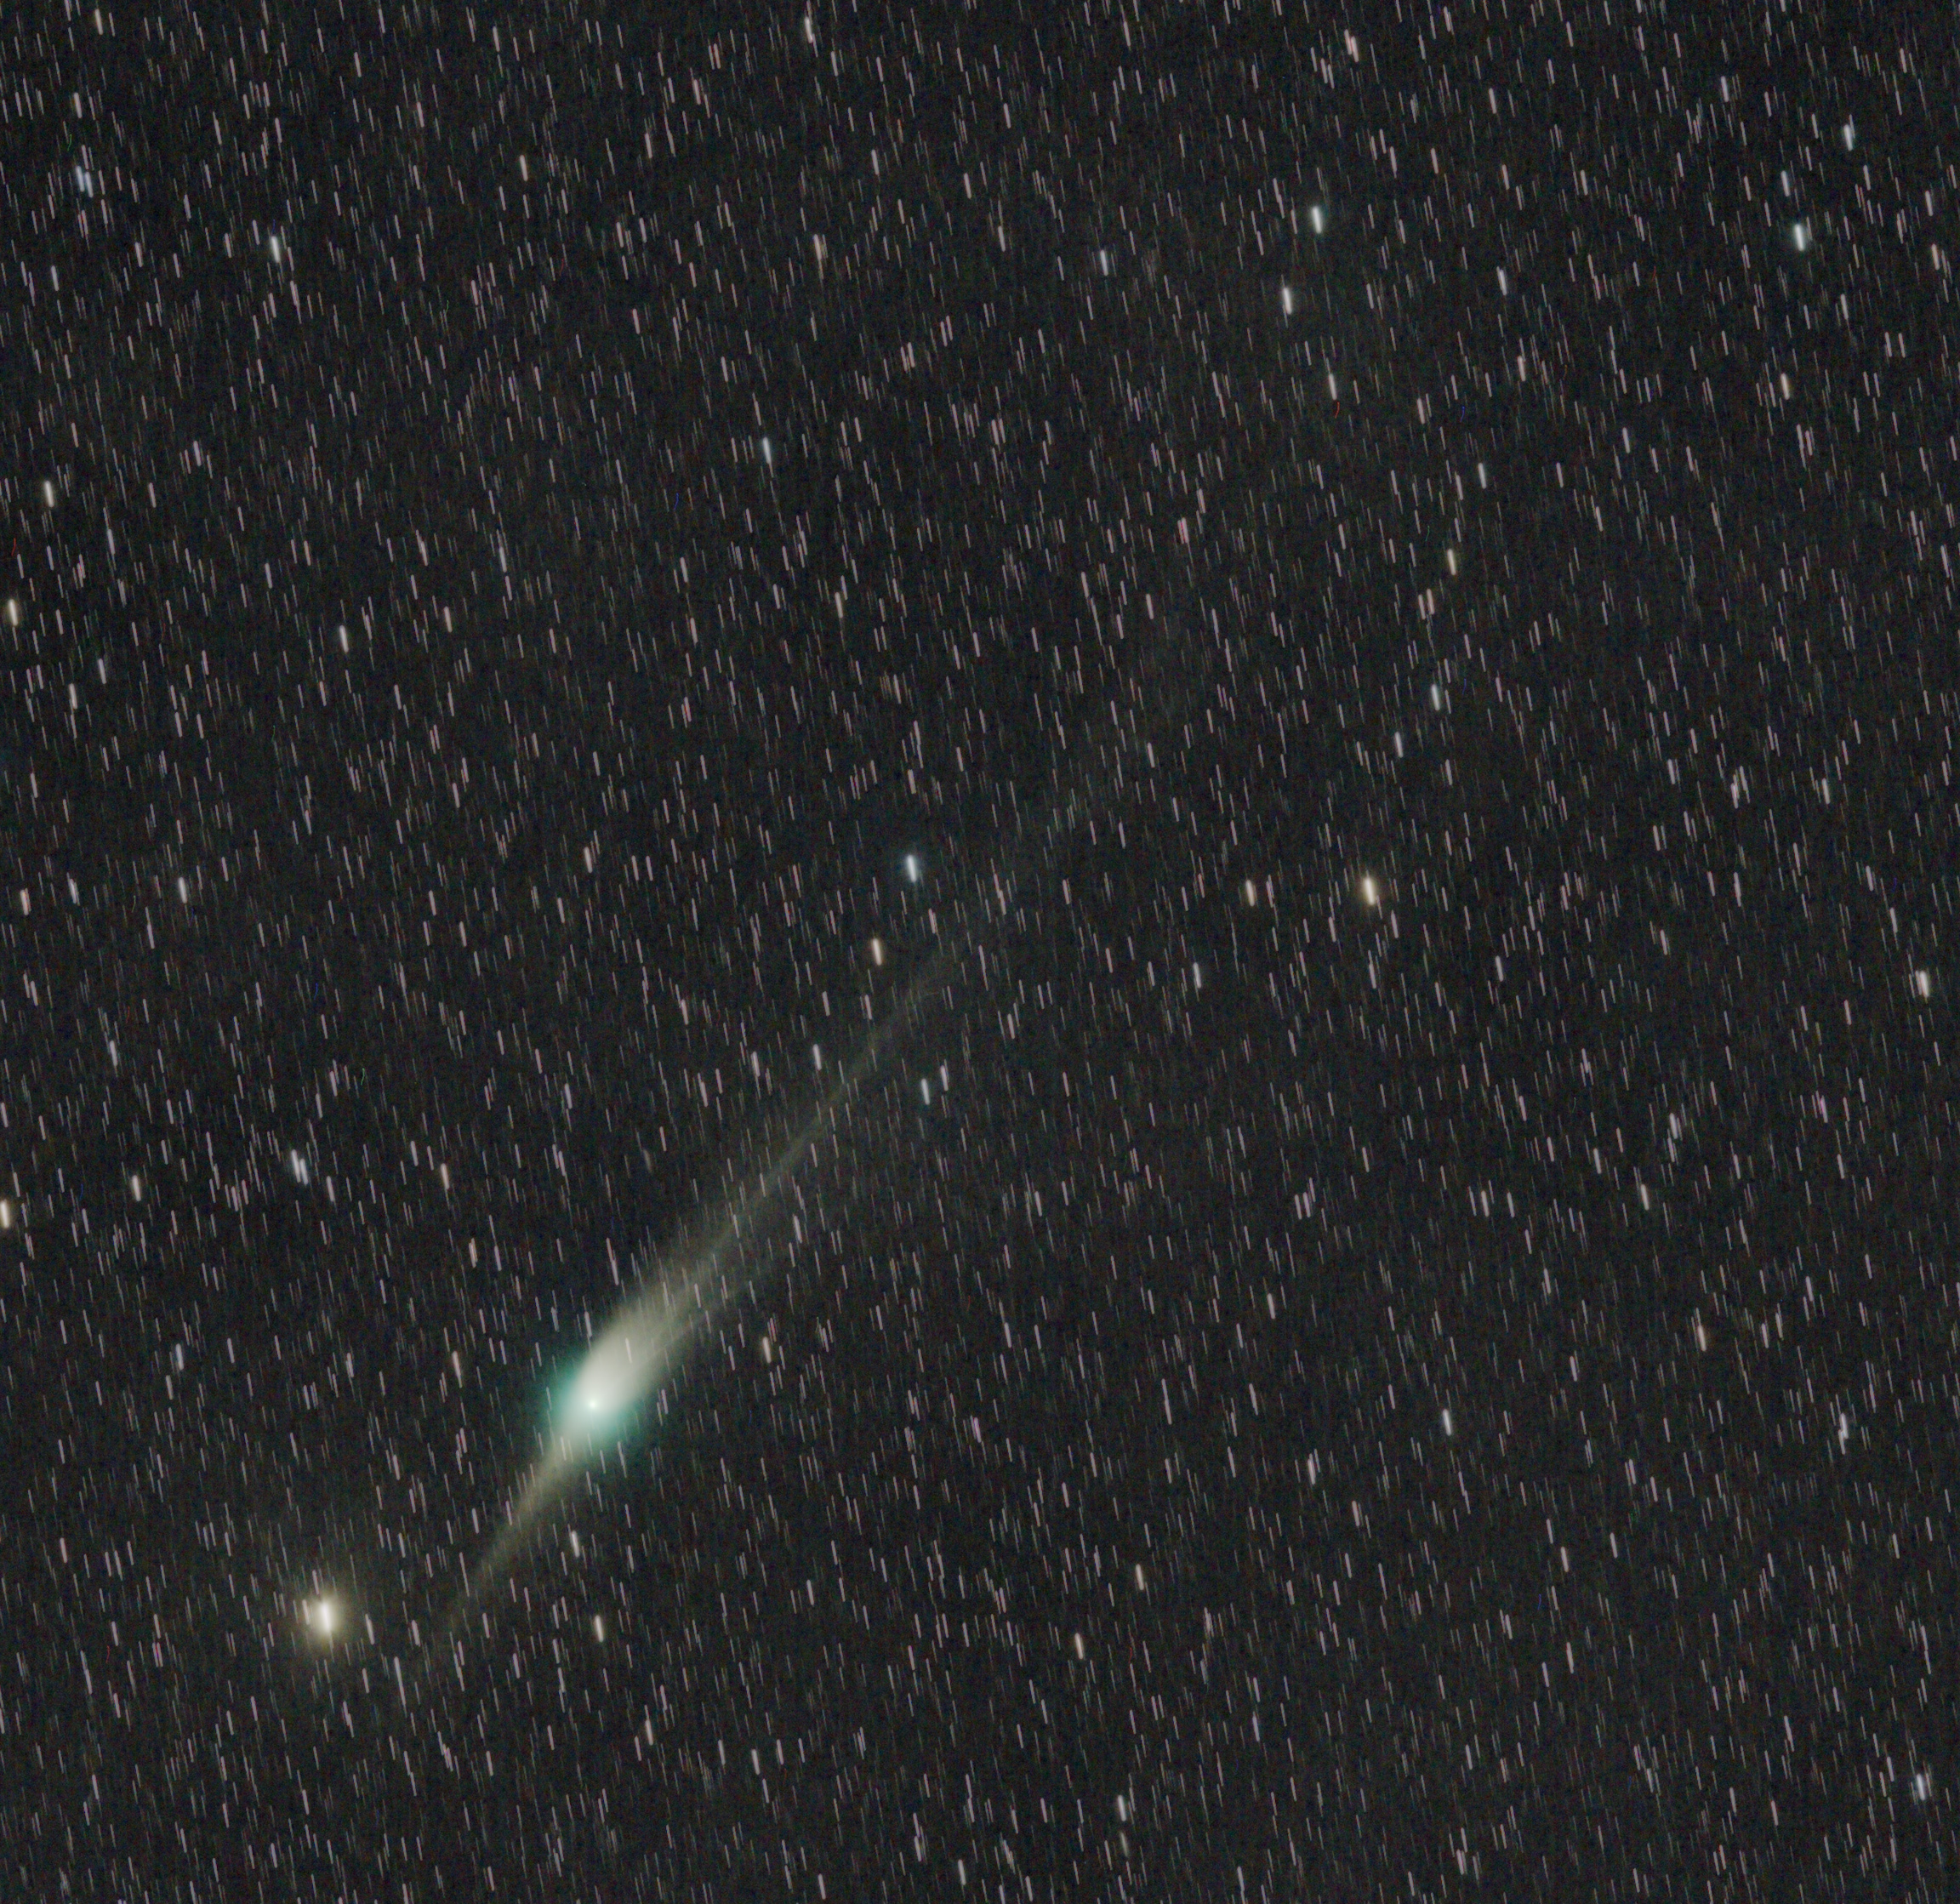 Kometa 135mm objektivem, složeno 60 snímků pořízených během půl hodiny. Kometa na obloze popoletěla mezi hvězdami, proto se složením na kometu roztáhly do čárek. Martin Gembec